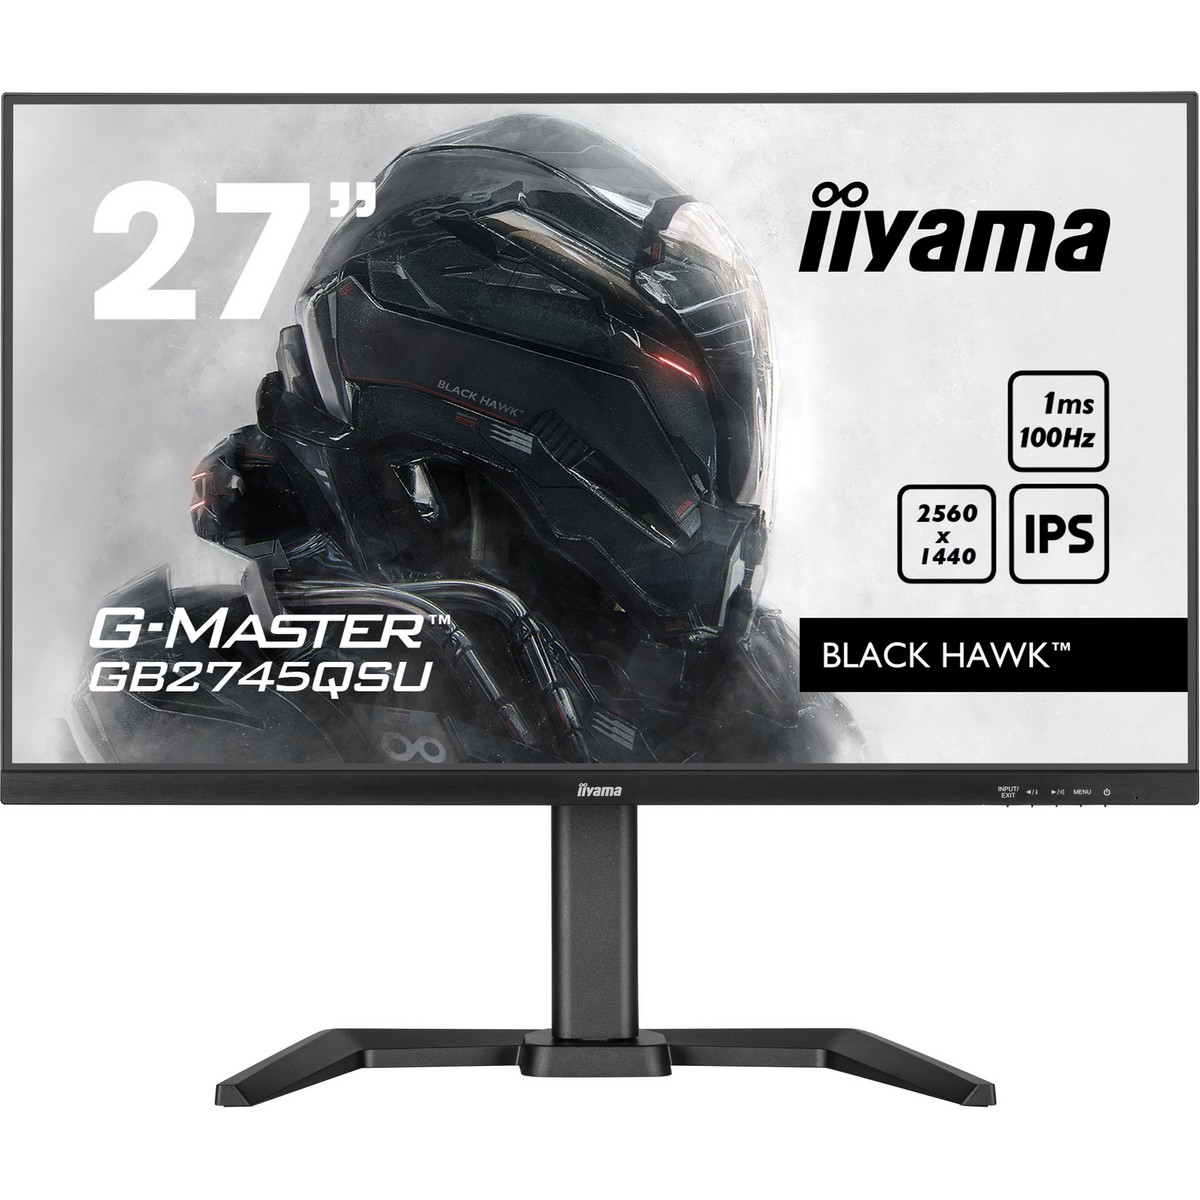 Iiyama - iiyama 27" G-Master GB2745QSU-B1 2560x1140 IPS 100Hz 1ms FreeSync Gaming Monitor